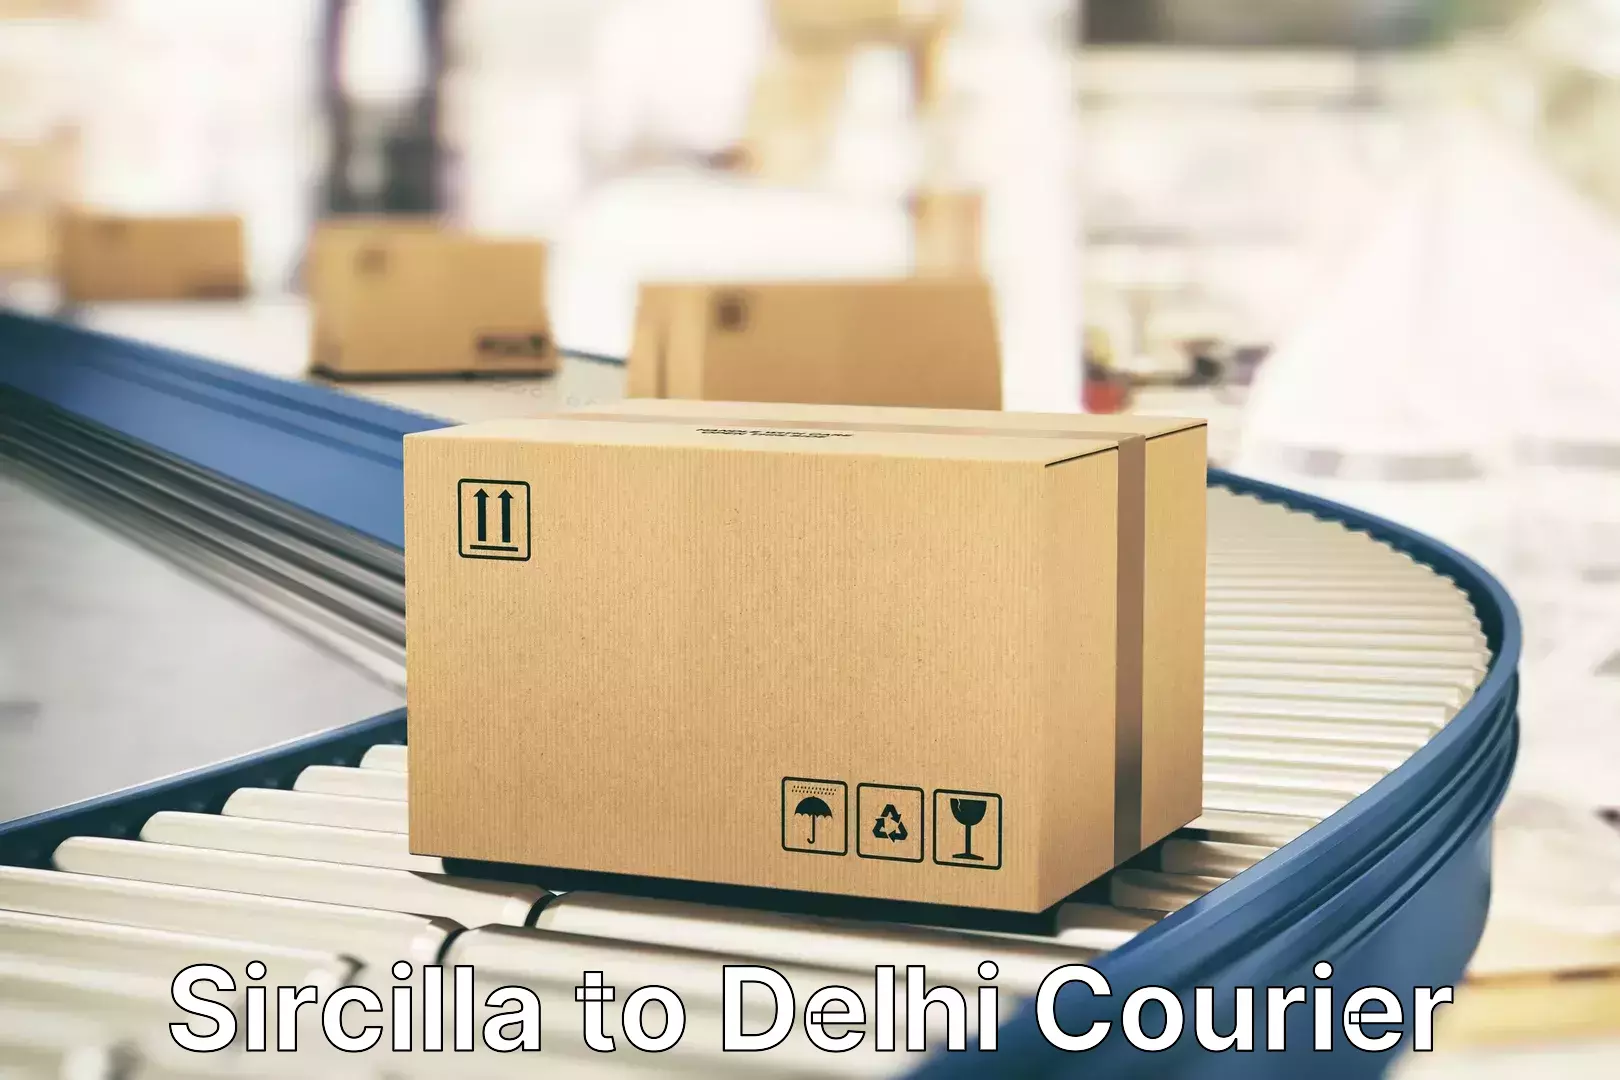 Baggage delivery estimate Sircilla to East Delhi